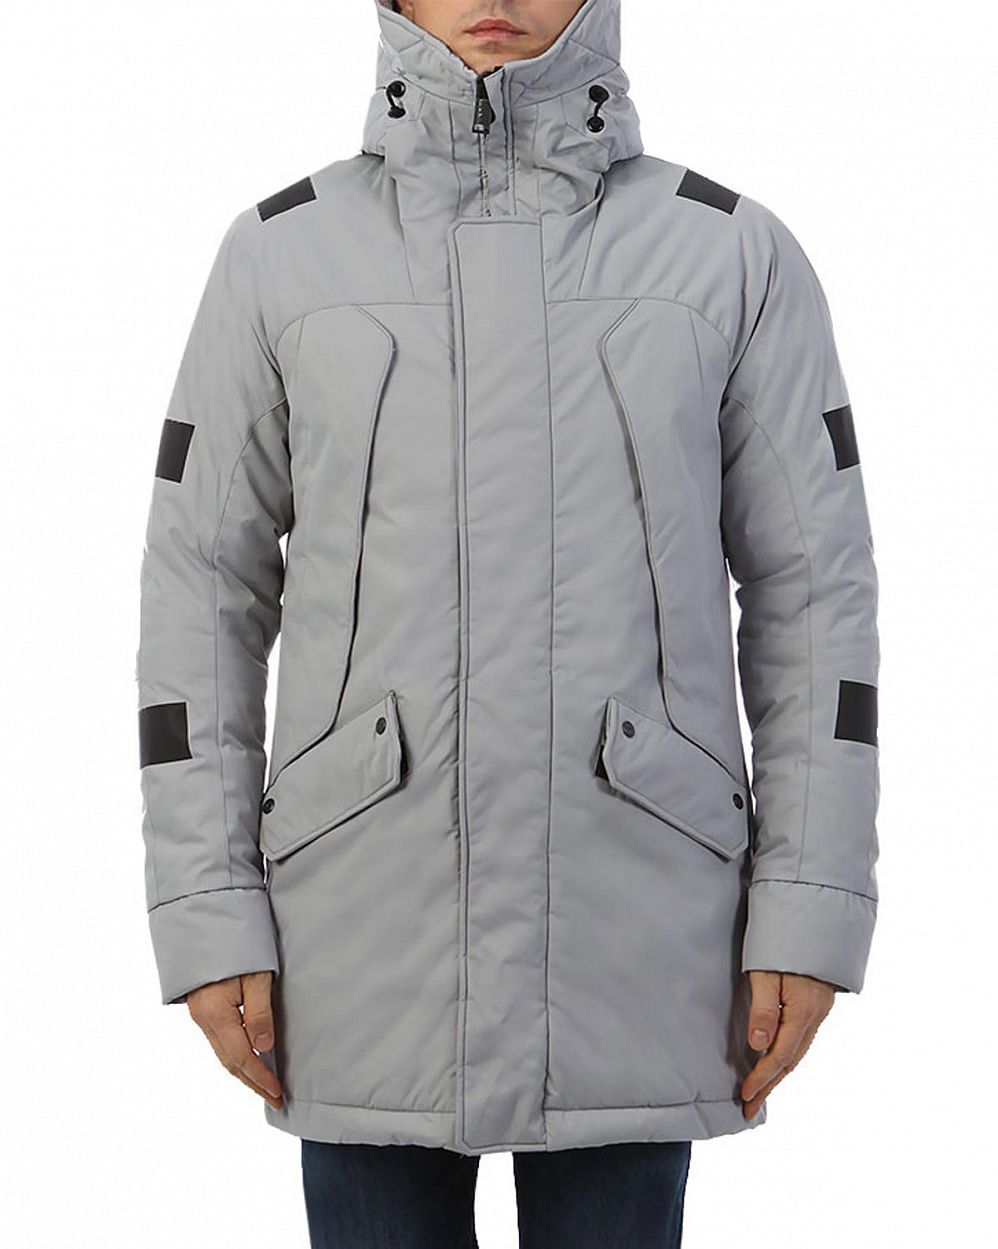 Куртка зимняя водонепроницаемая на мембране Krakatau Marcasite Grey отзывы